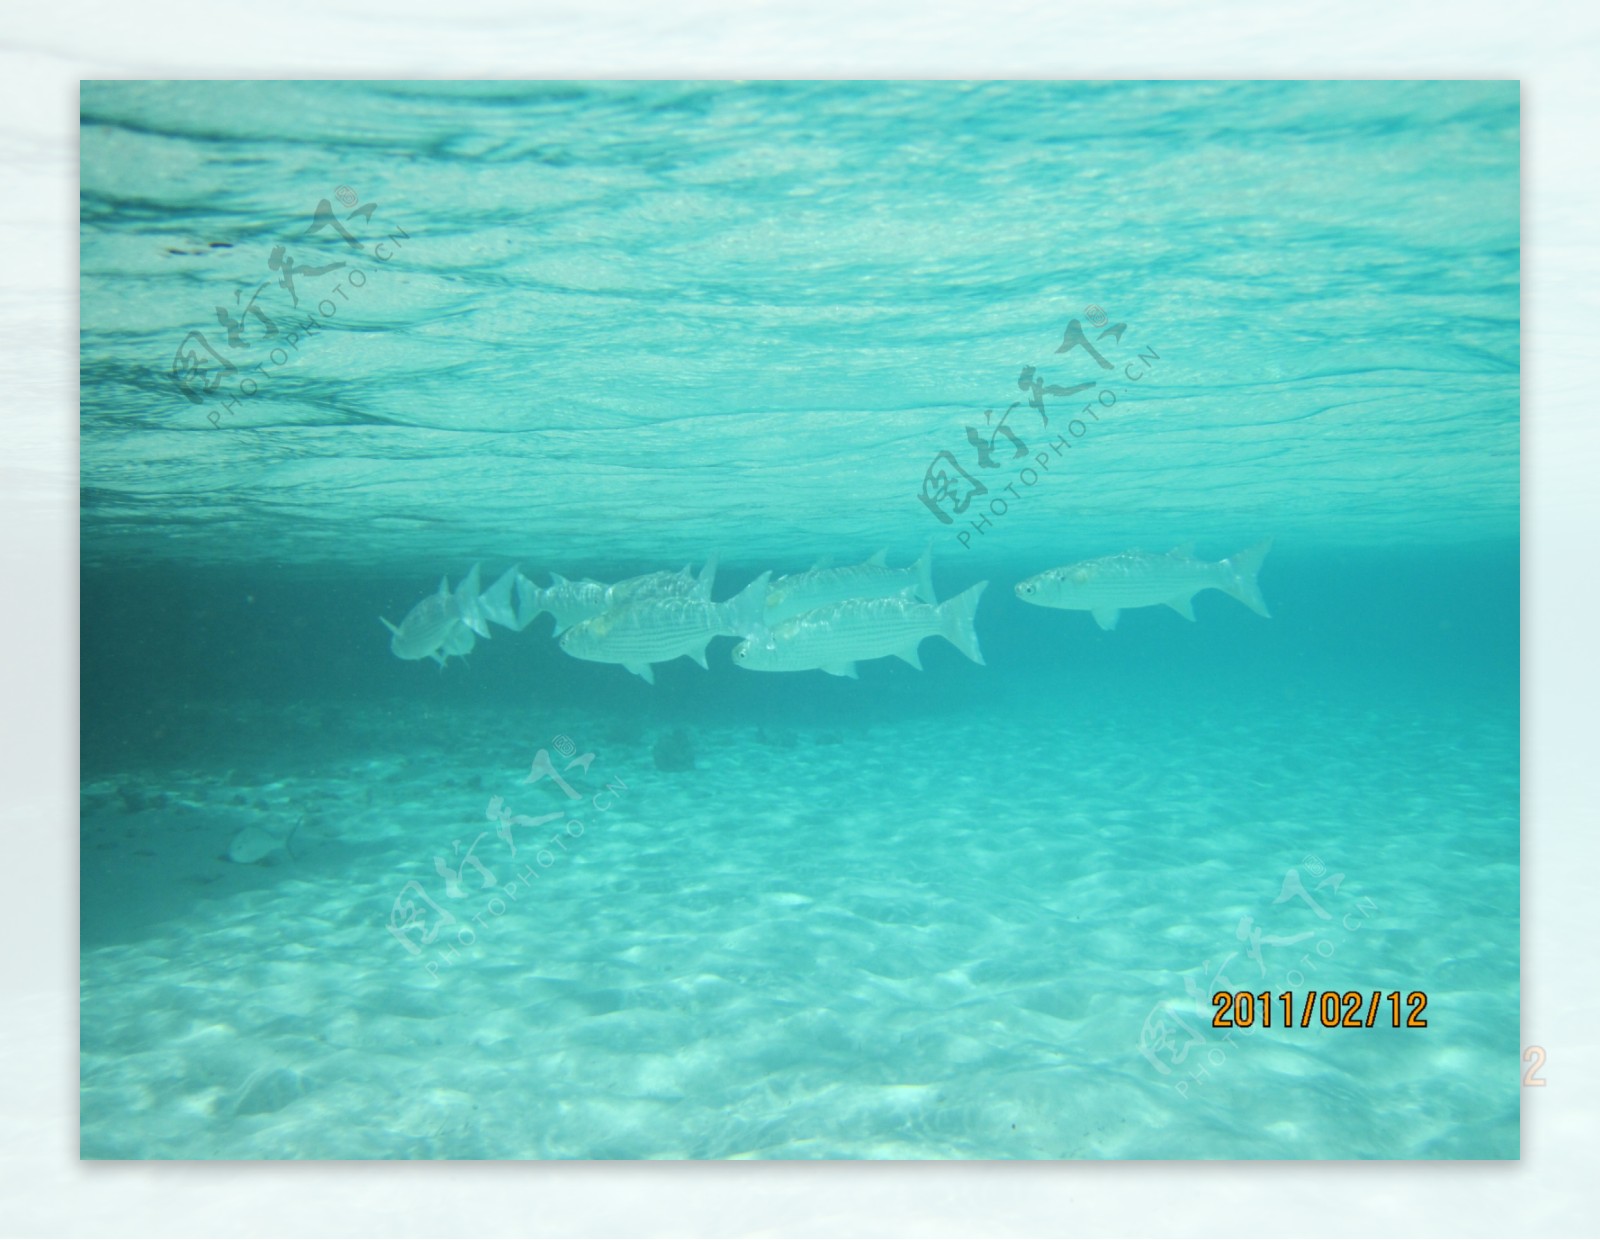 马尔代夫的海底